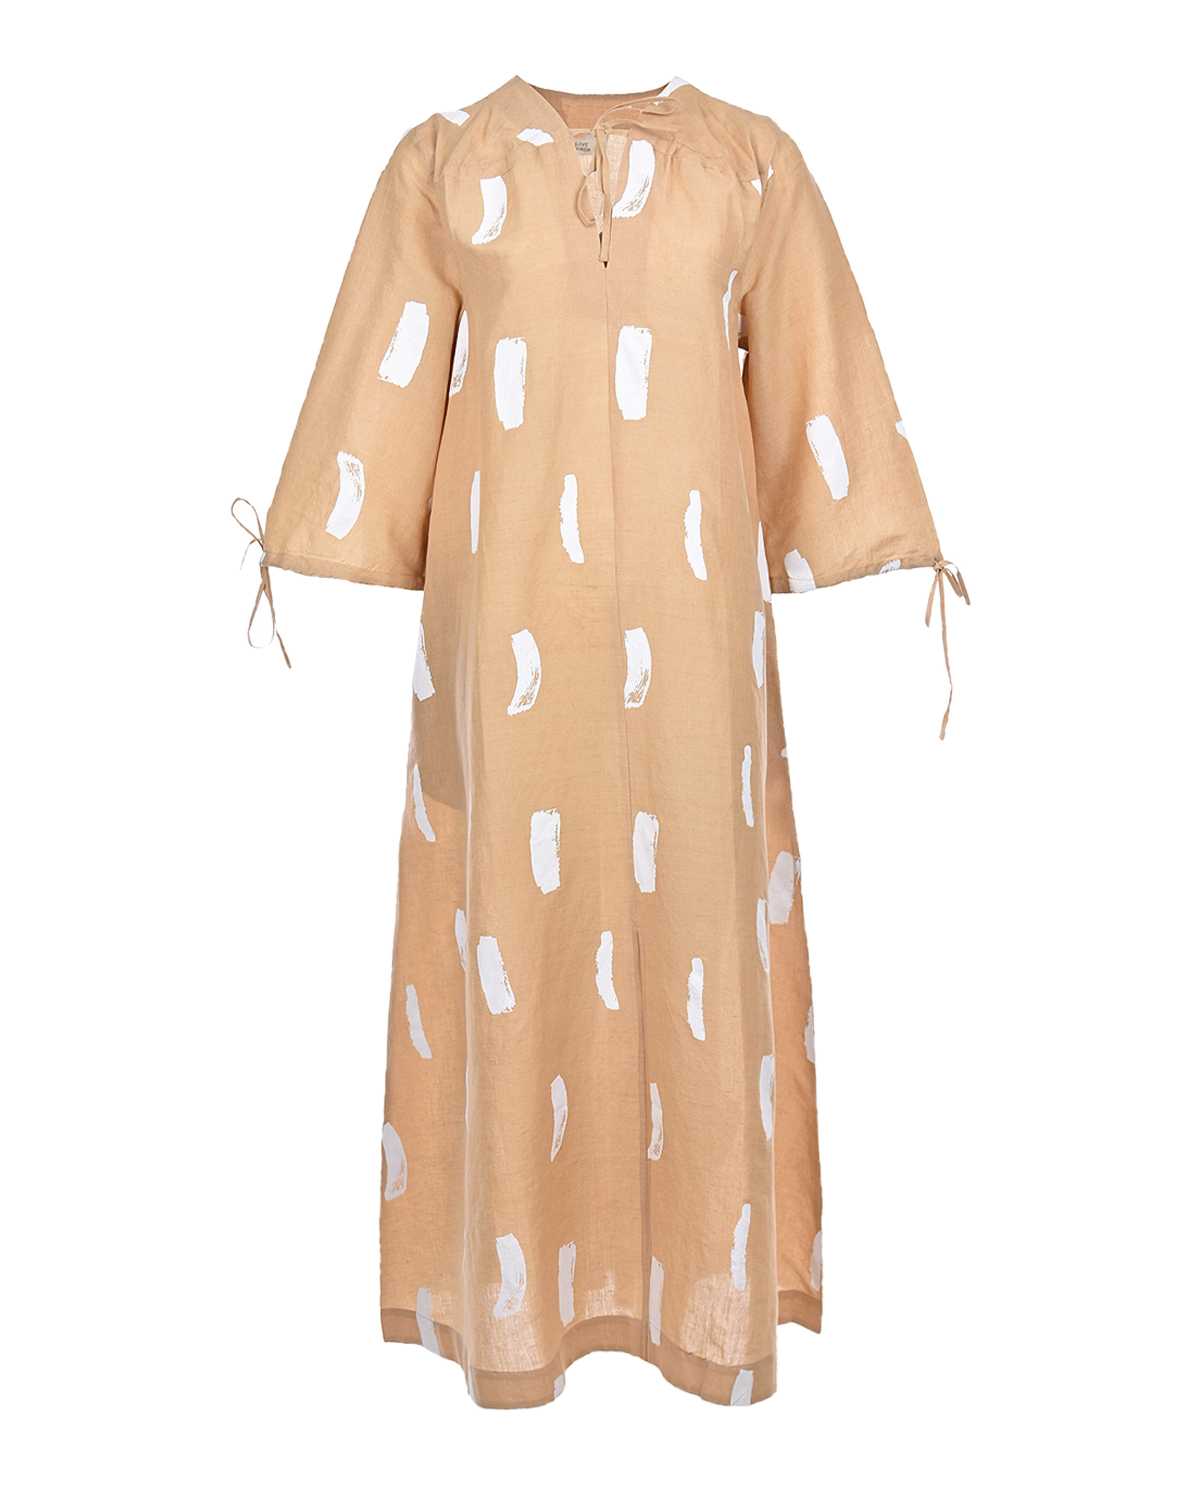 Бежевое платье с абстрактным принтом LOVE BIRDS, размер 40, цвет бежевый - фото 1